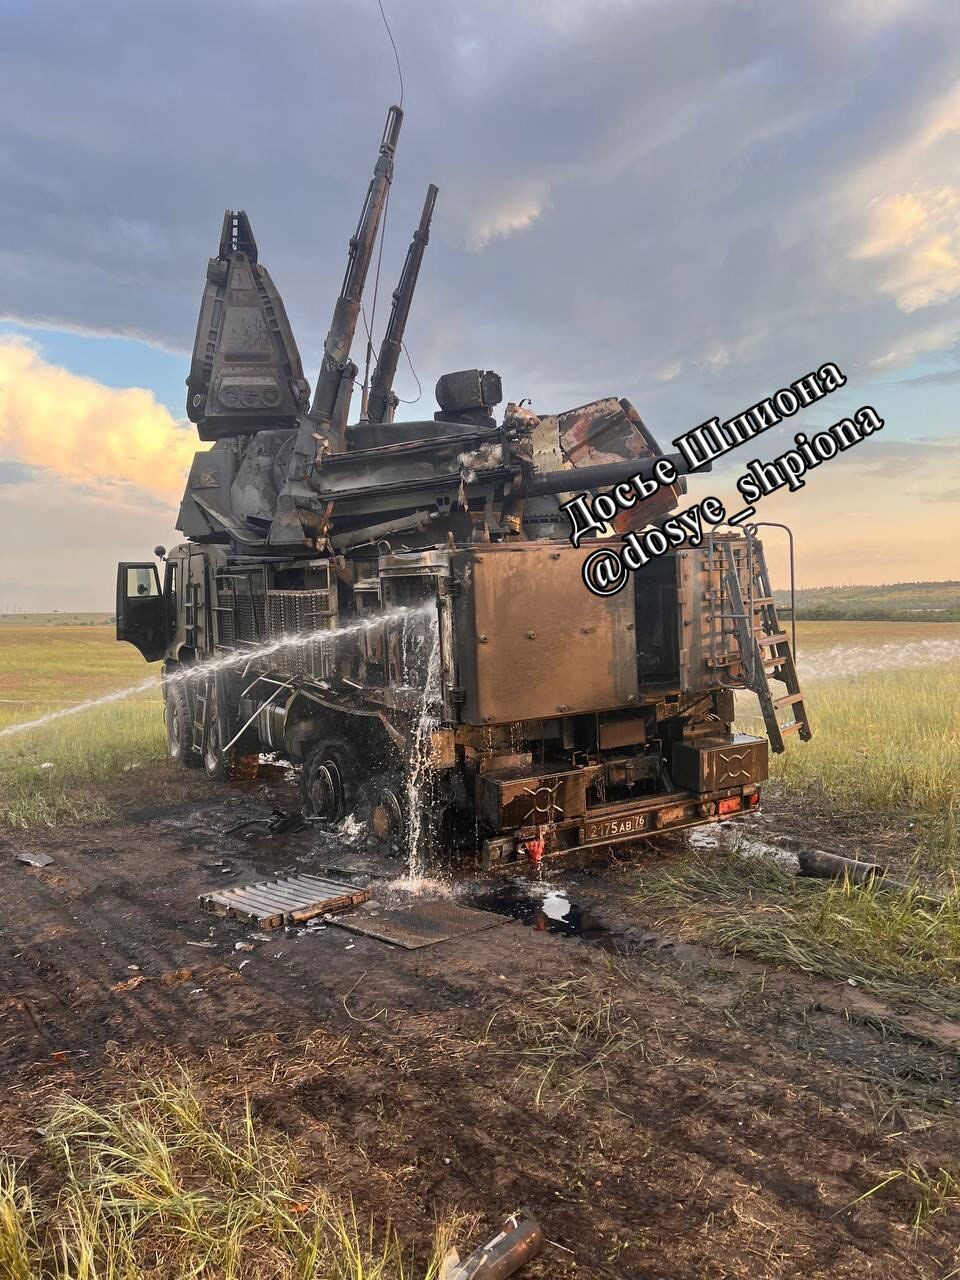 Выгорел изнутри: появились фото уничтоженного в Донецкой области российского ЗРПК "Панцирь-С1"